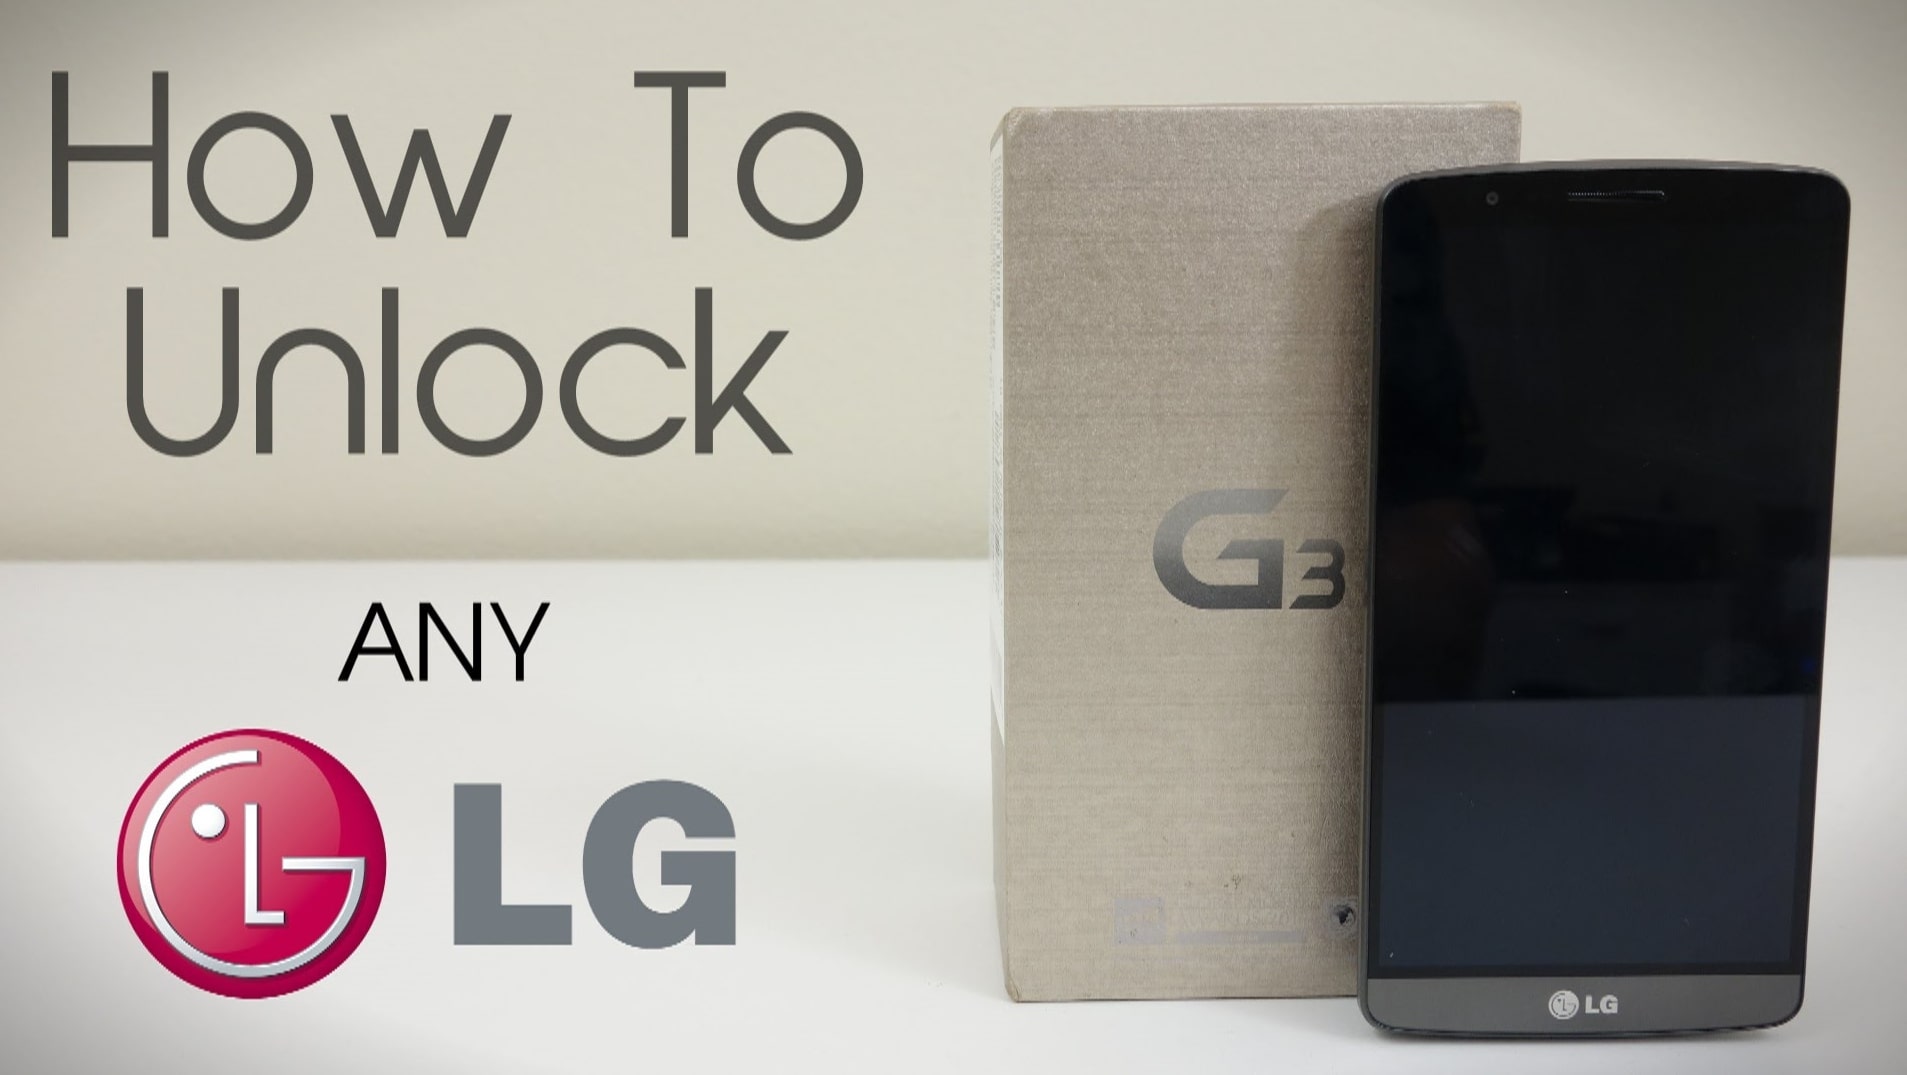 Unlock LG Phone